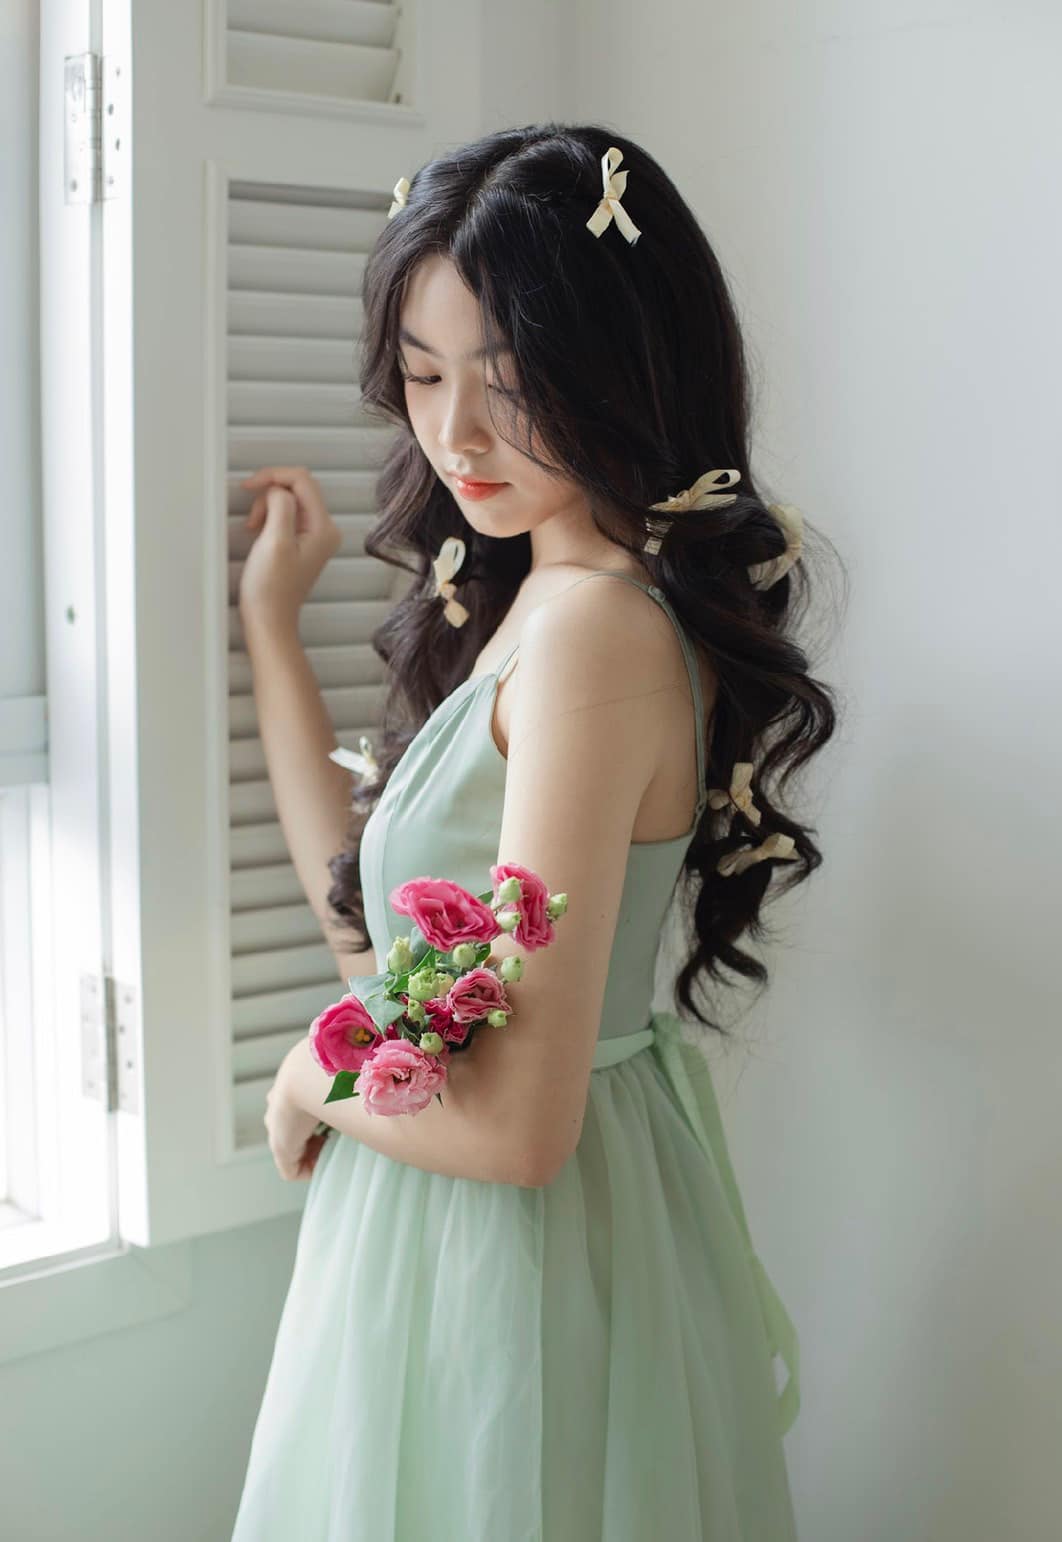 Nhan sắc xinh đẹp, lôi cuốn của con gái MC Quyền Linh ở tuổi 16 được dự đoán &quot;Hoa hậu tương lai&quot; - Ảnh 5.